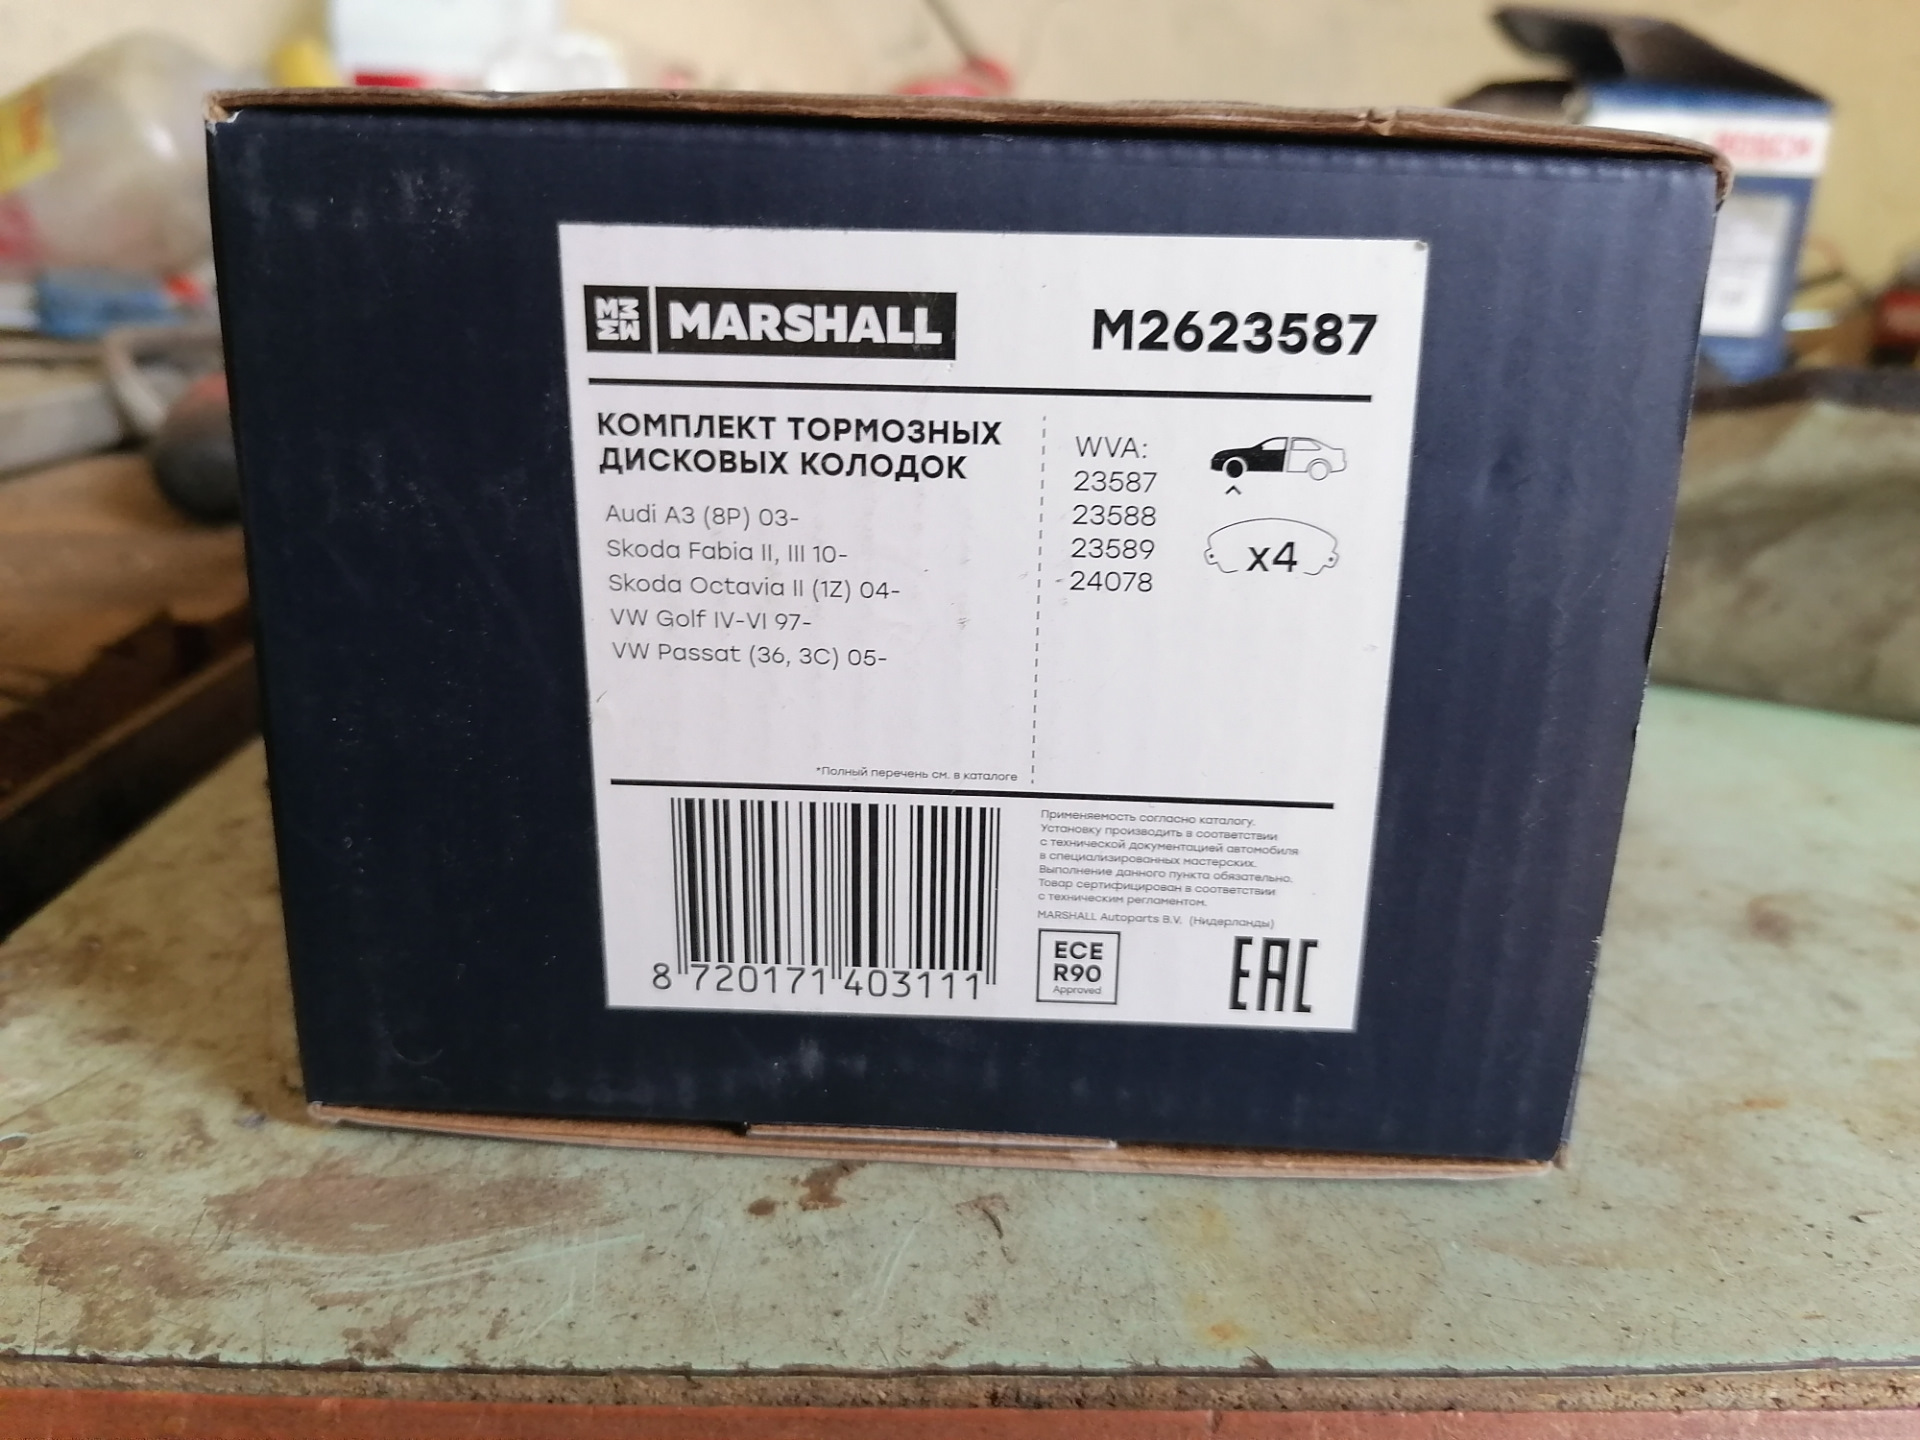 Фирма маршал производитель. Колодки Маршал m2623587. M2623587 Marshall тормозные совместимость. M2623587. Marshall запчасти.